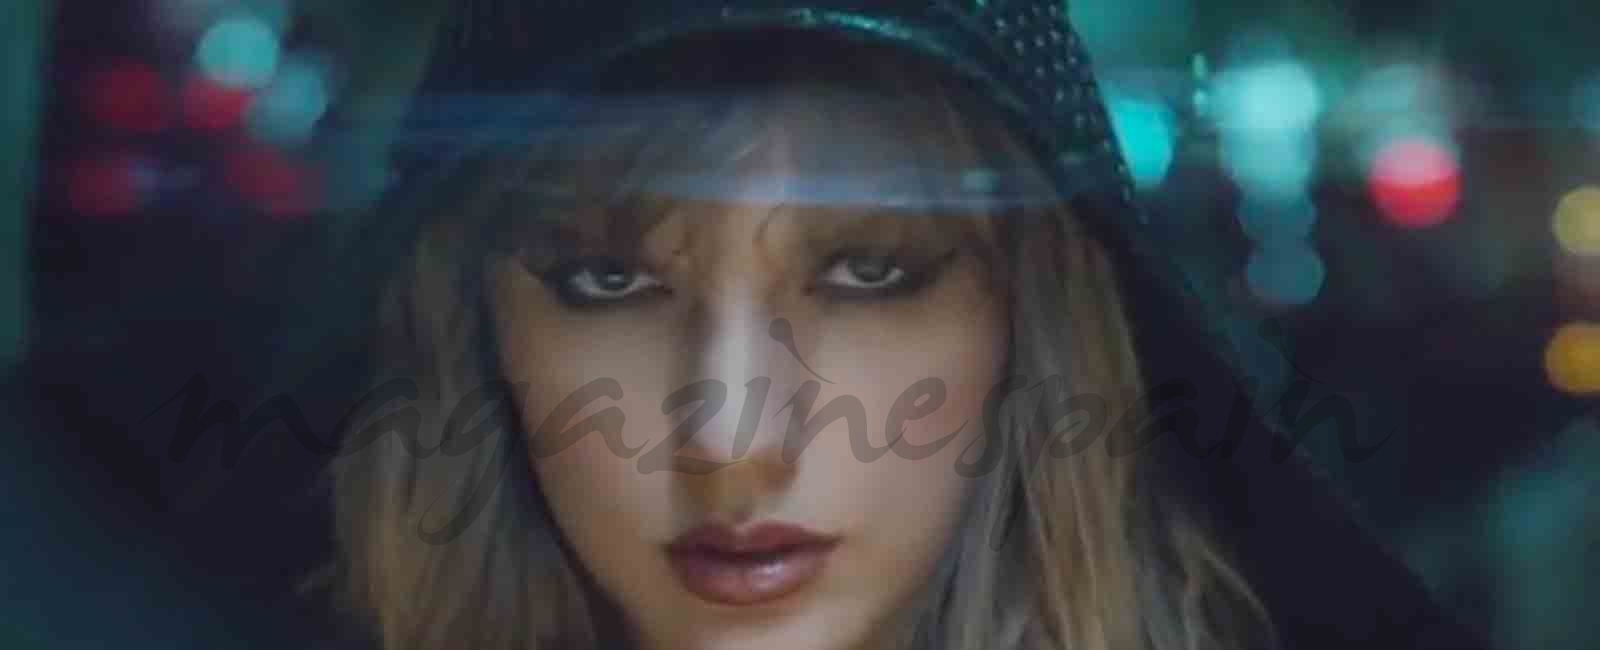 El nuevo videoclip de Taylor Swift “Ready for it”, supera las 40 millones de visualizaciones